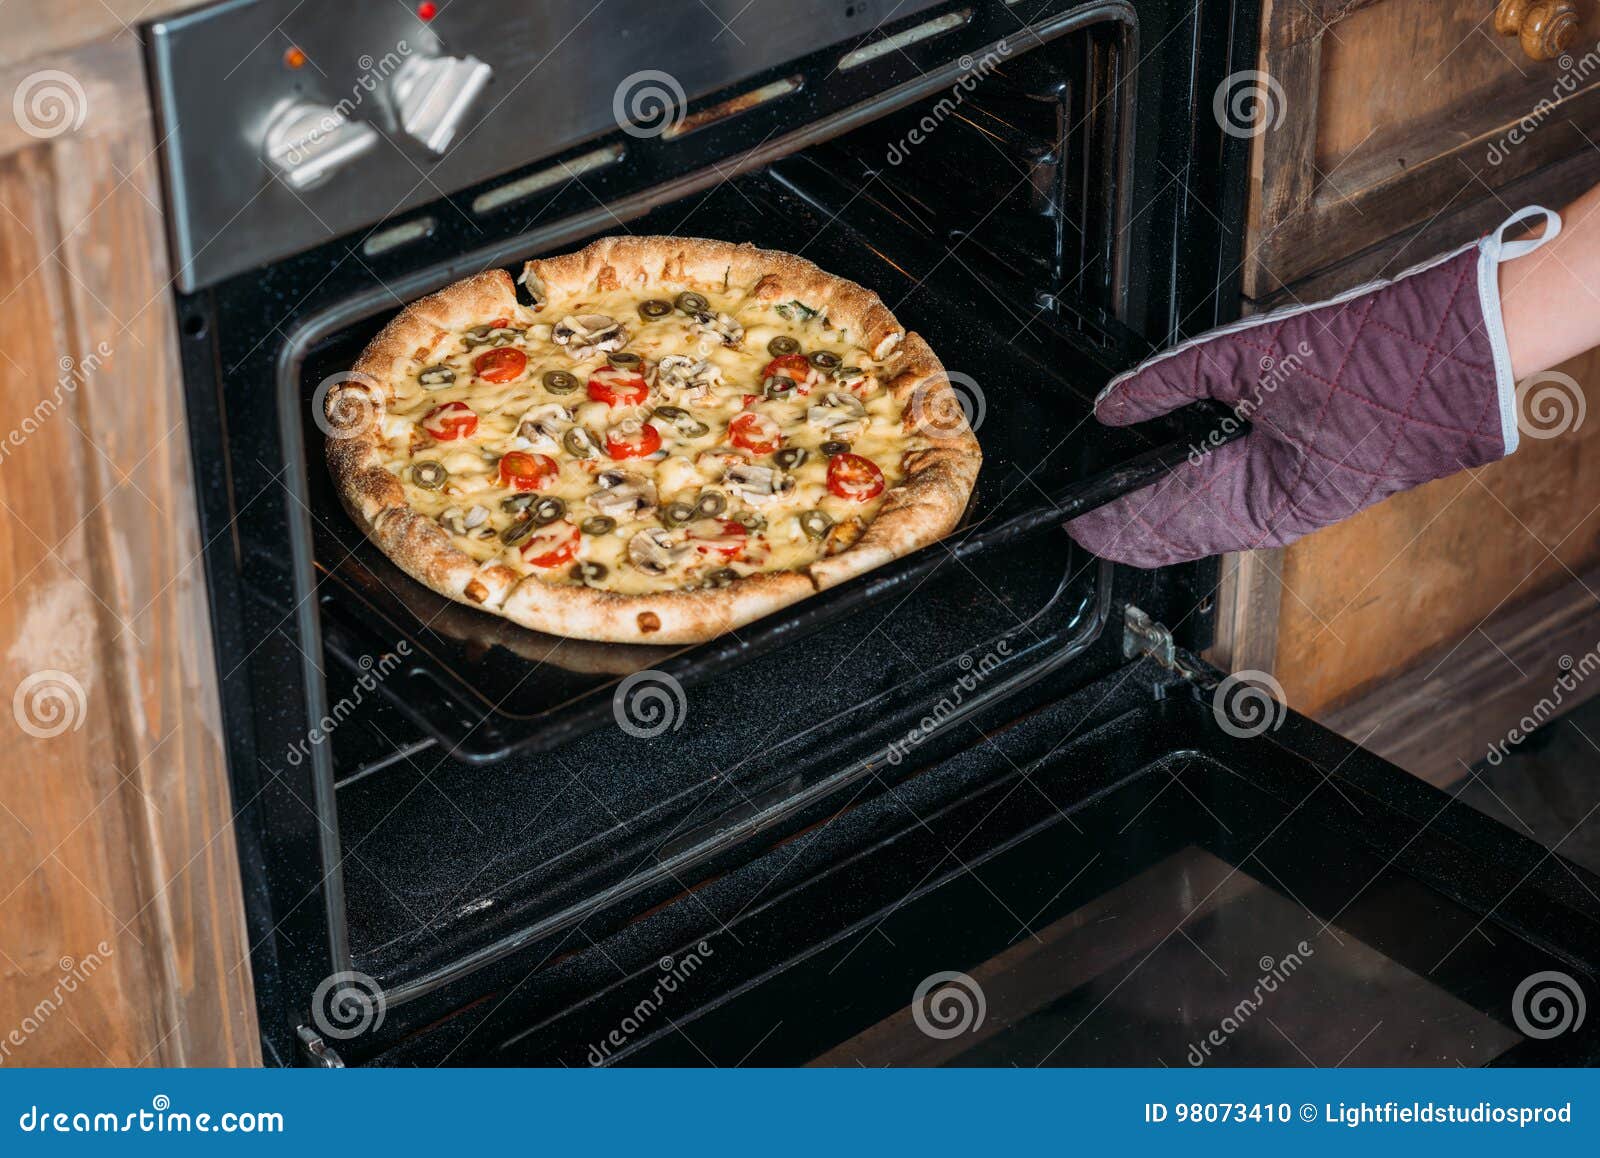 что нужно чтобы приготовить пиццу в духовке фото 98